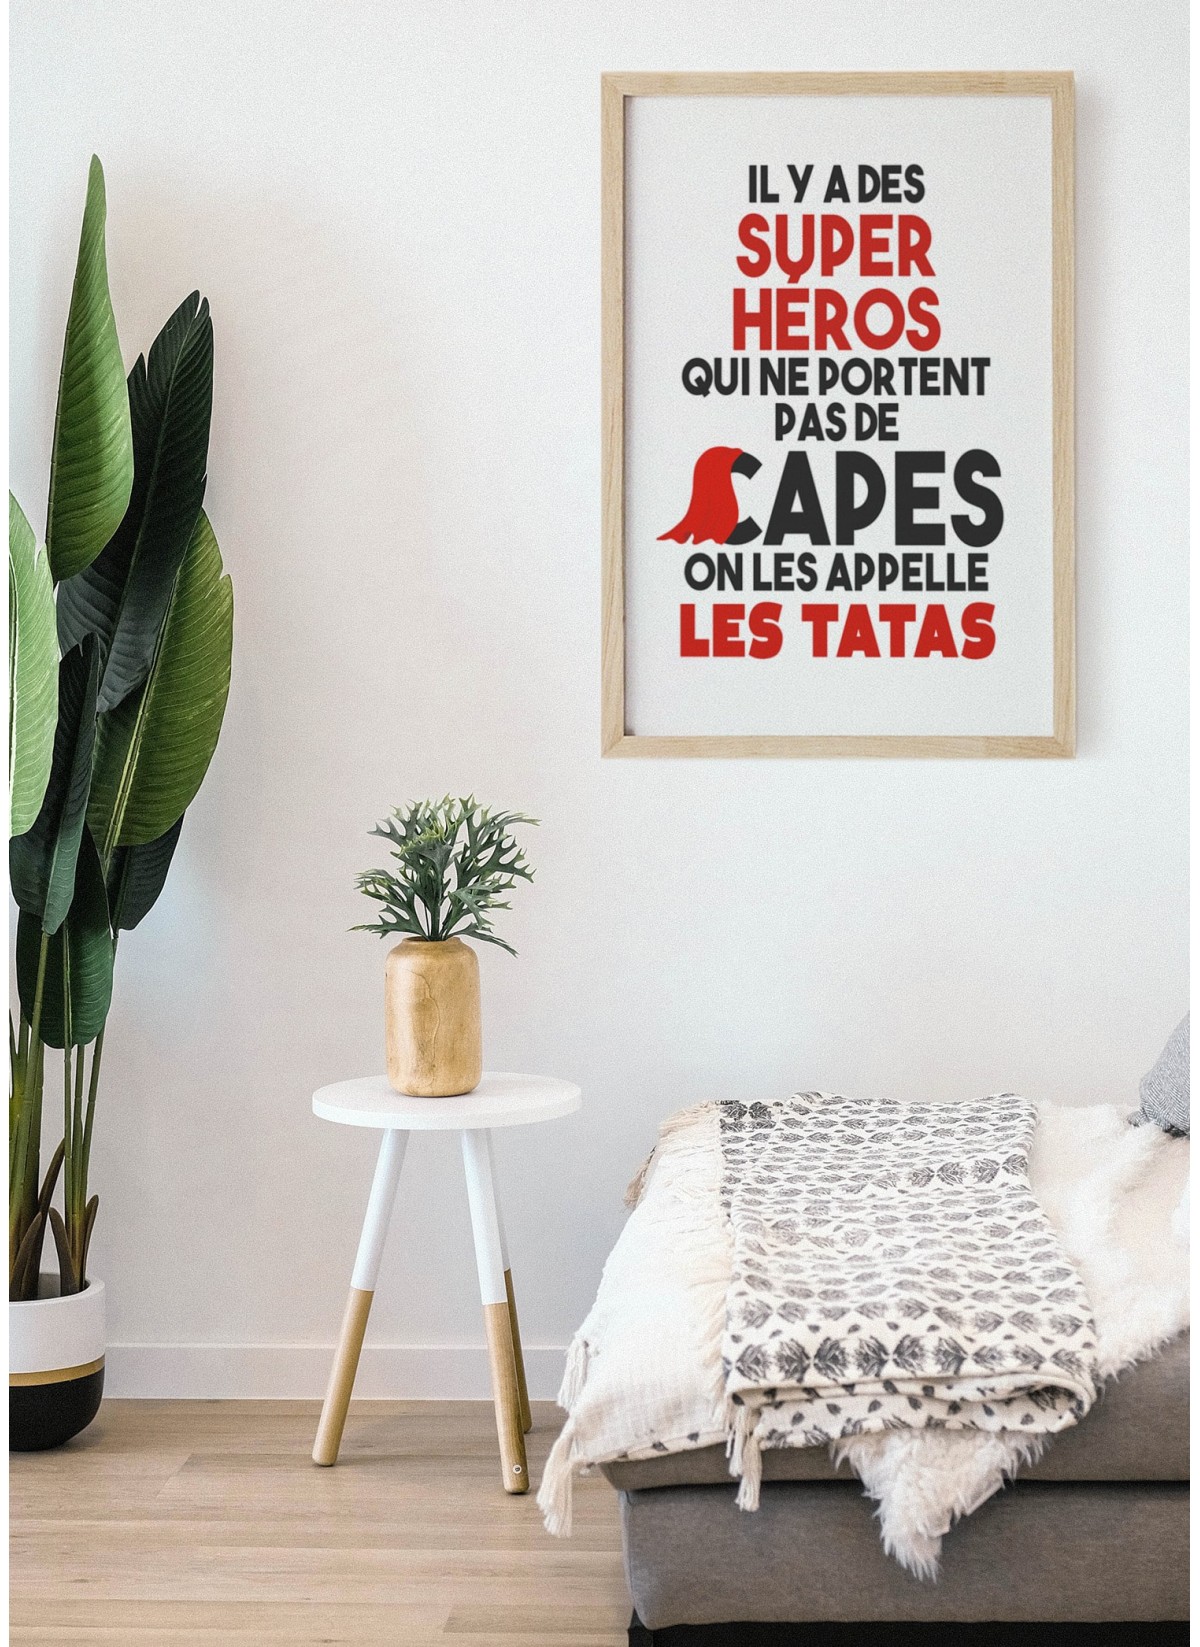 Affiche Tata personnalisée, cadeau pour tata -  France